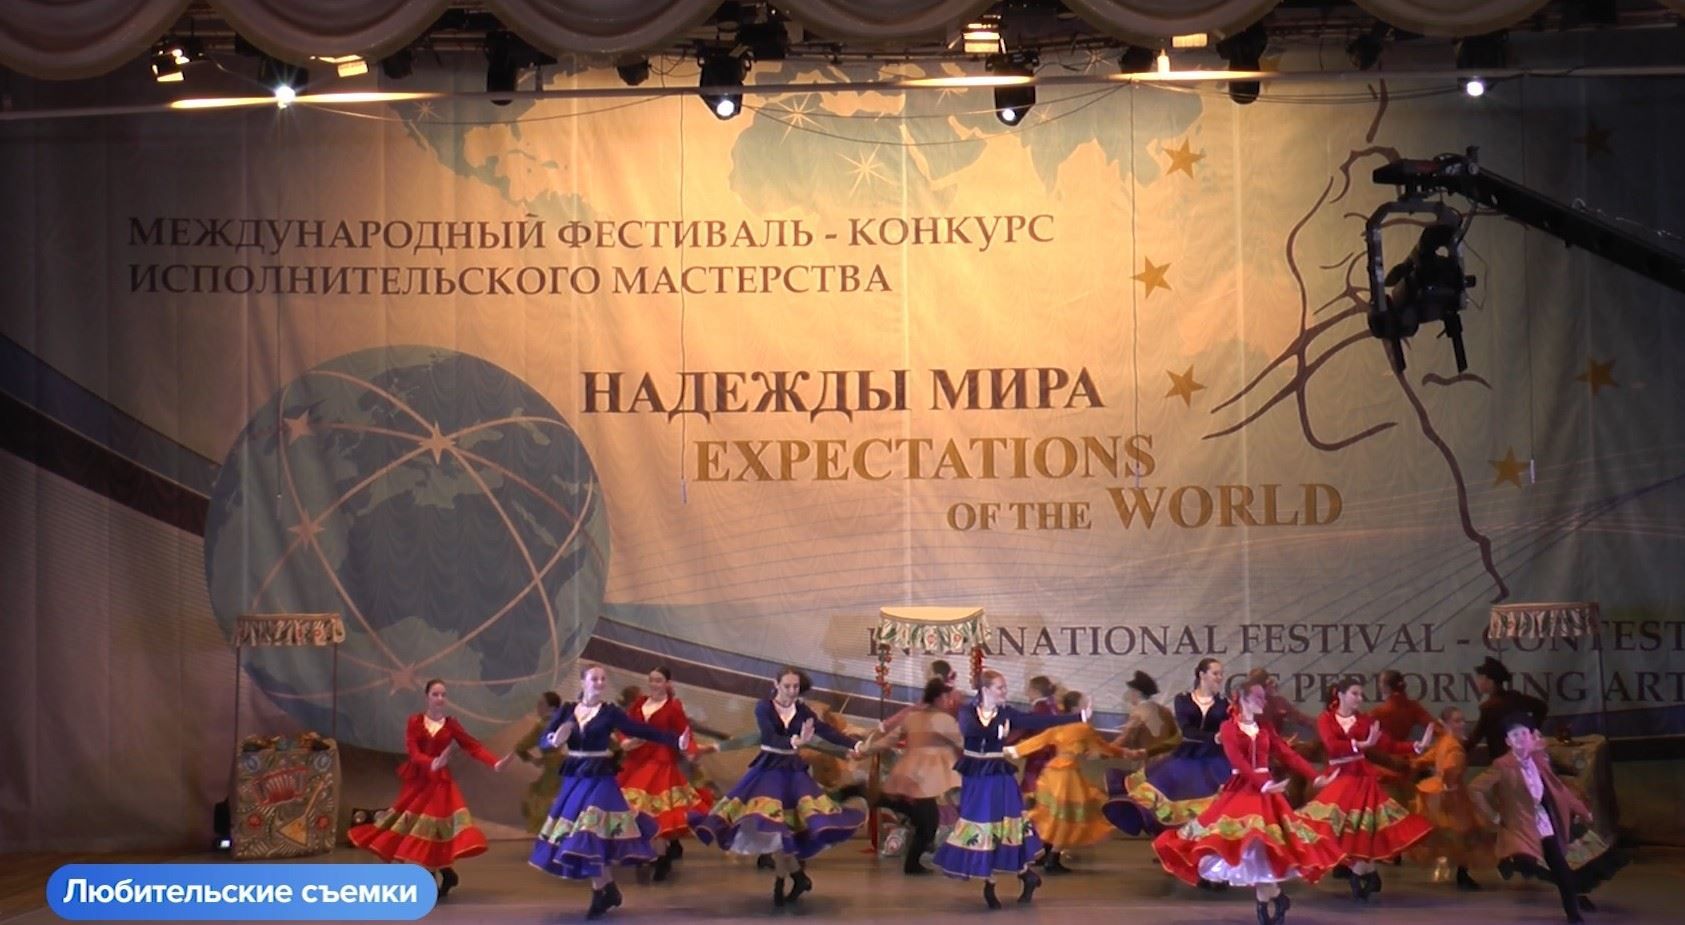 Галичский хореографический ансамбль "Фортуна" победил сразу в двух международных творческих конкурсах